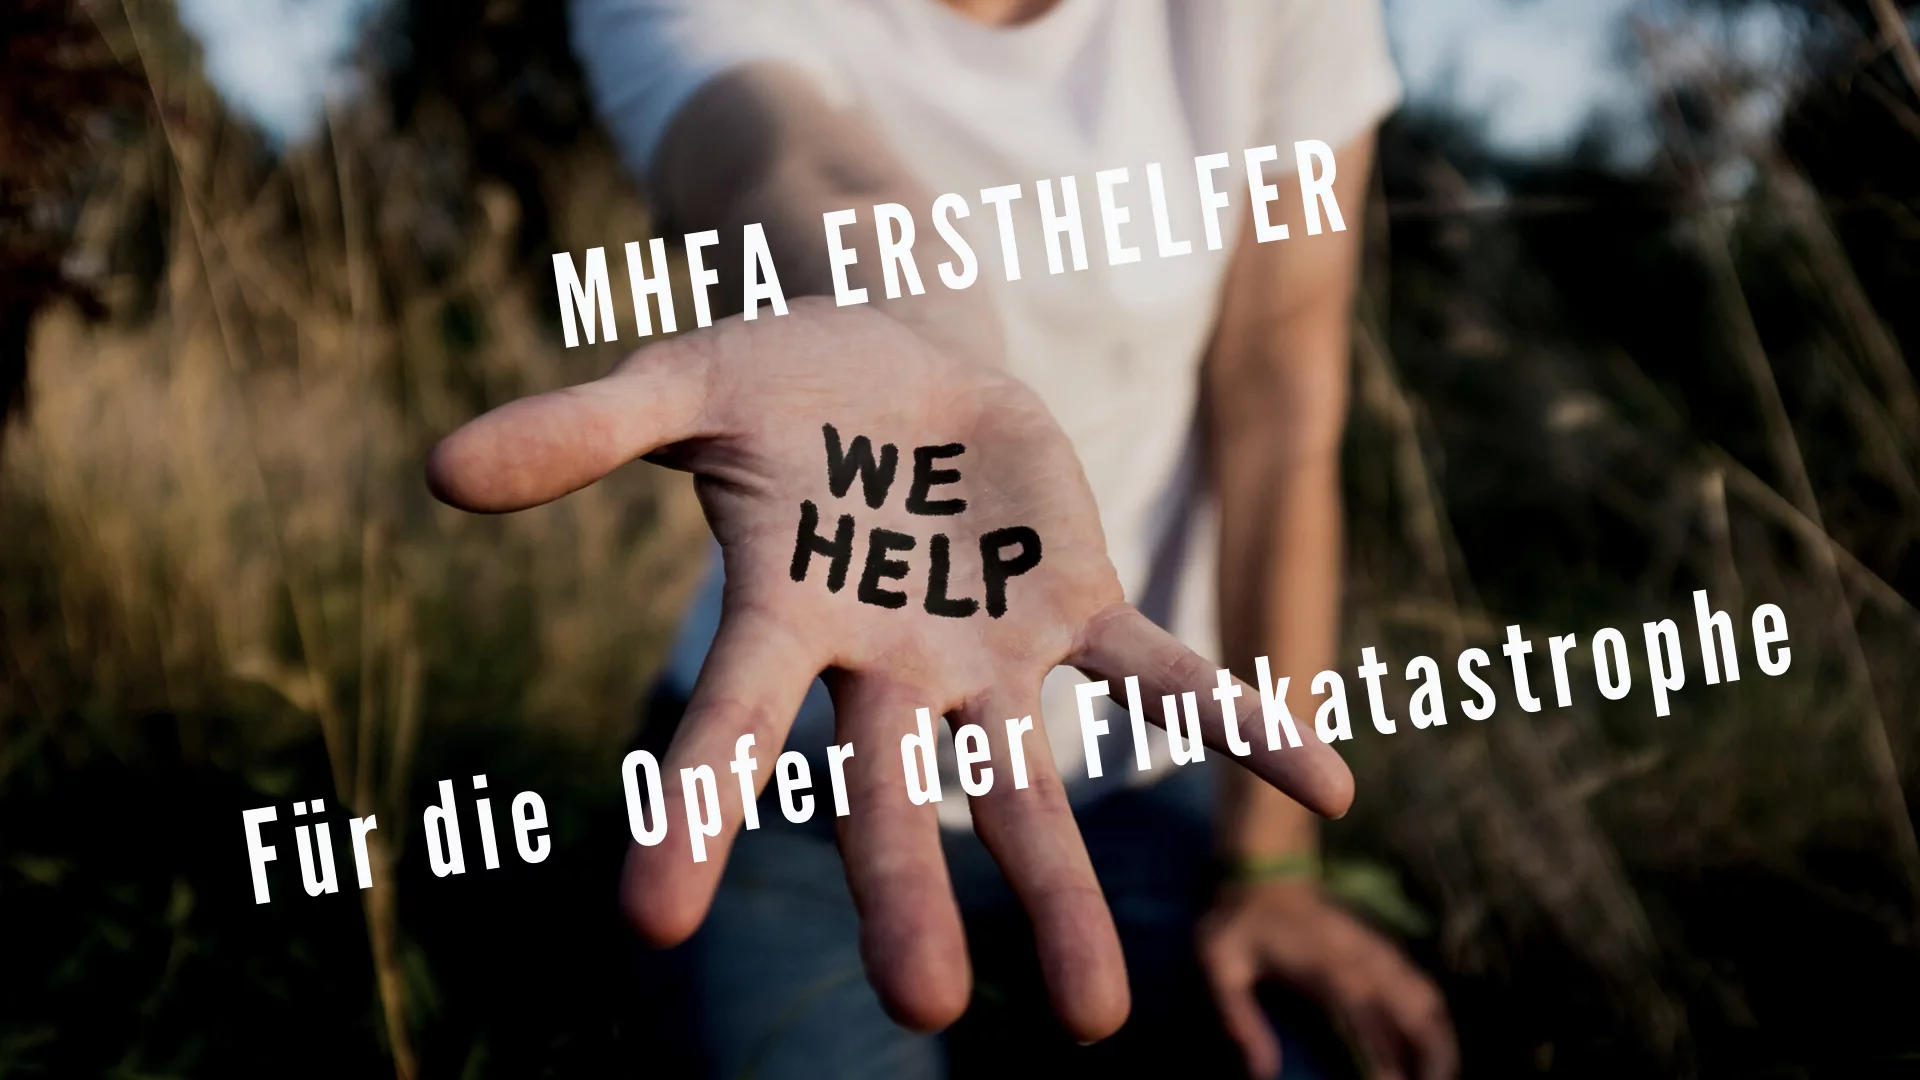 MHFA Ersthelfer bieten seelische Hilfe